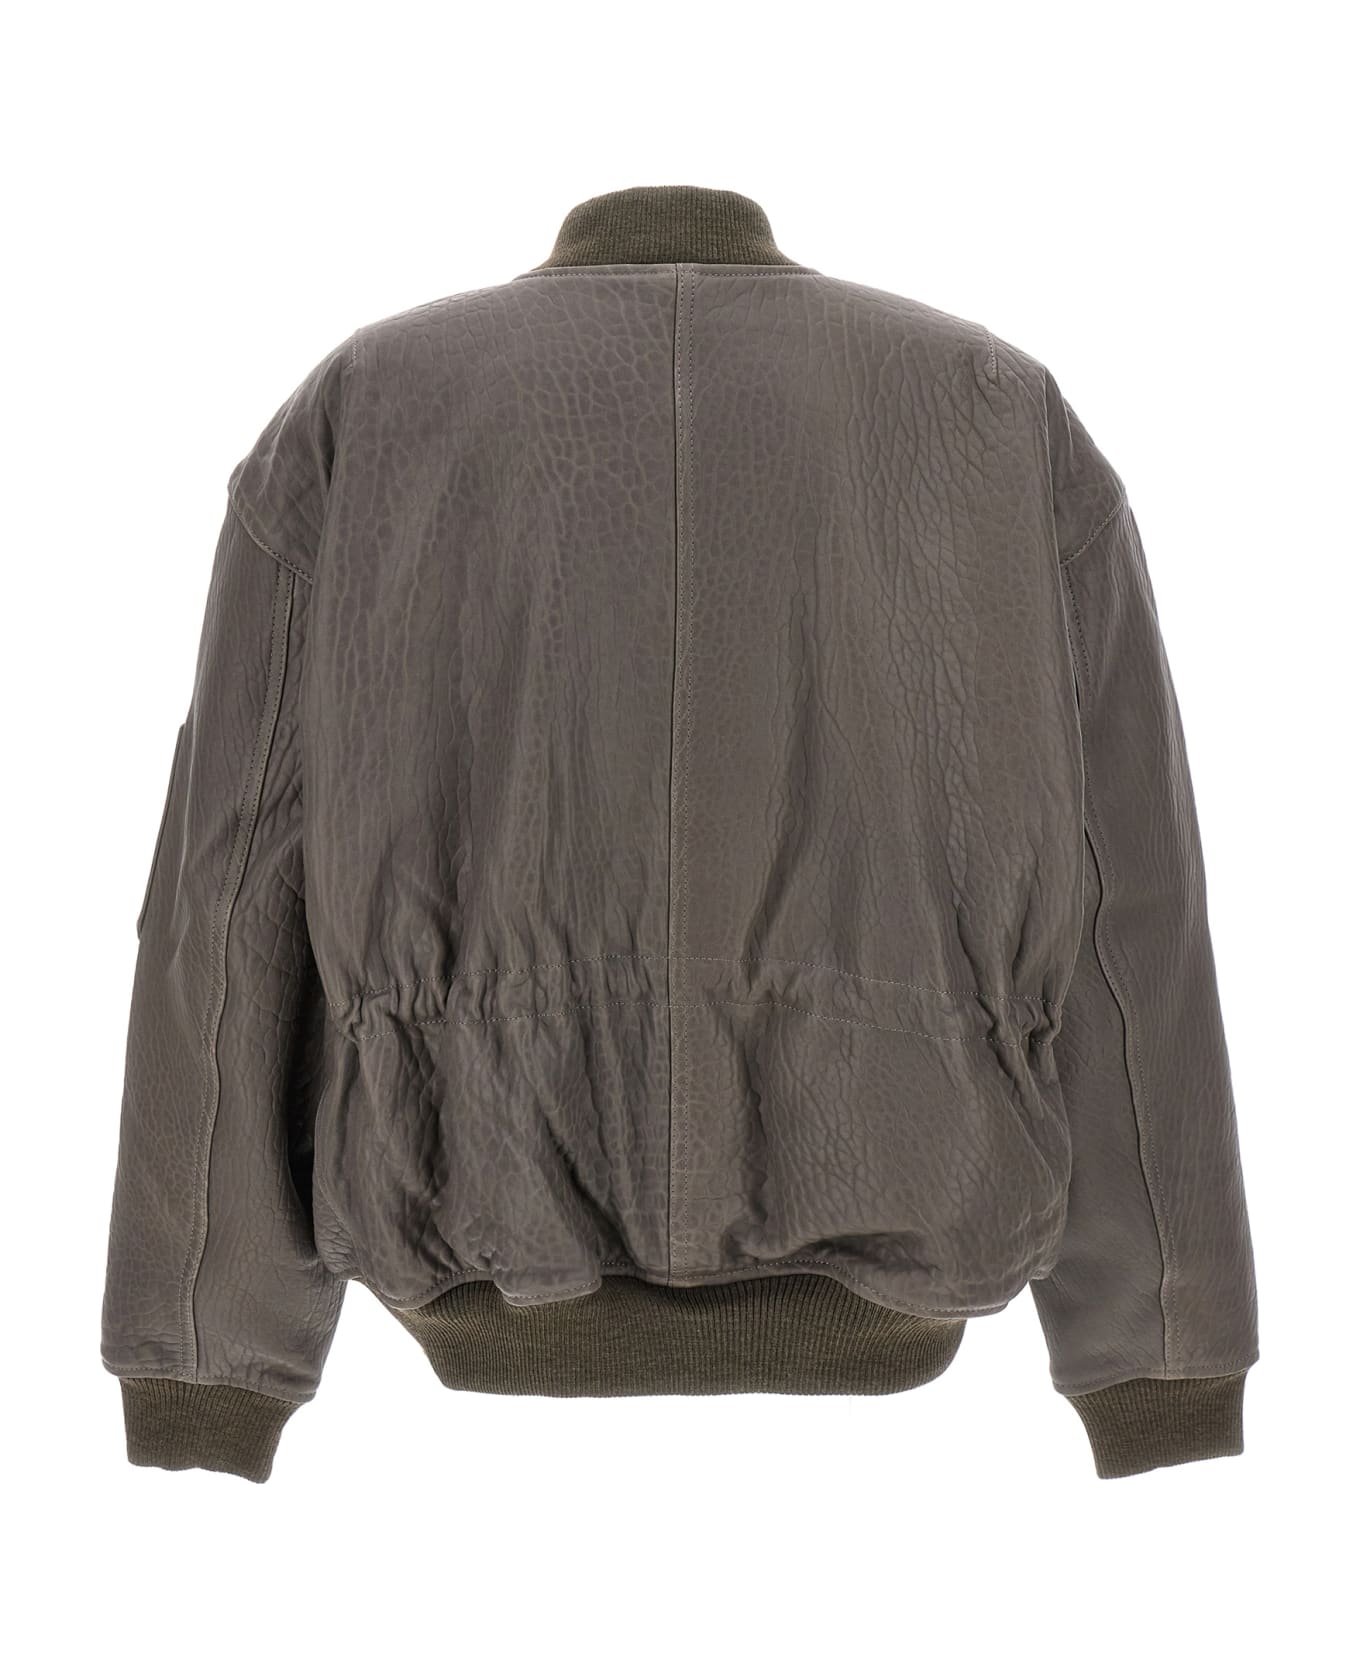 David Koma Oversize Leather Bomber Jacket - Gray